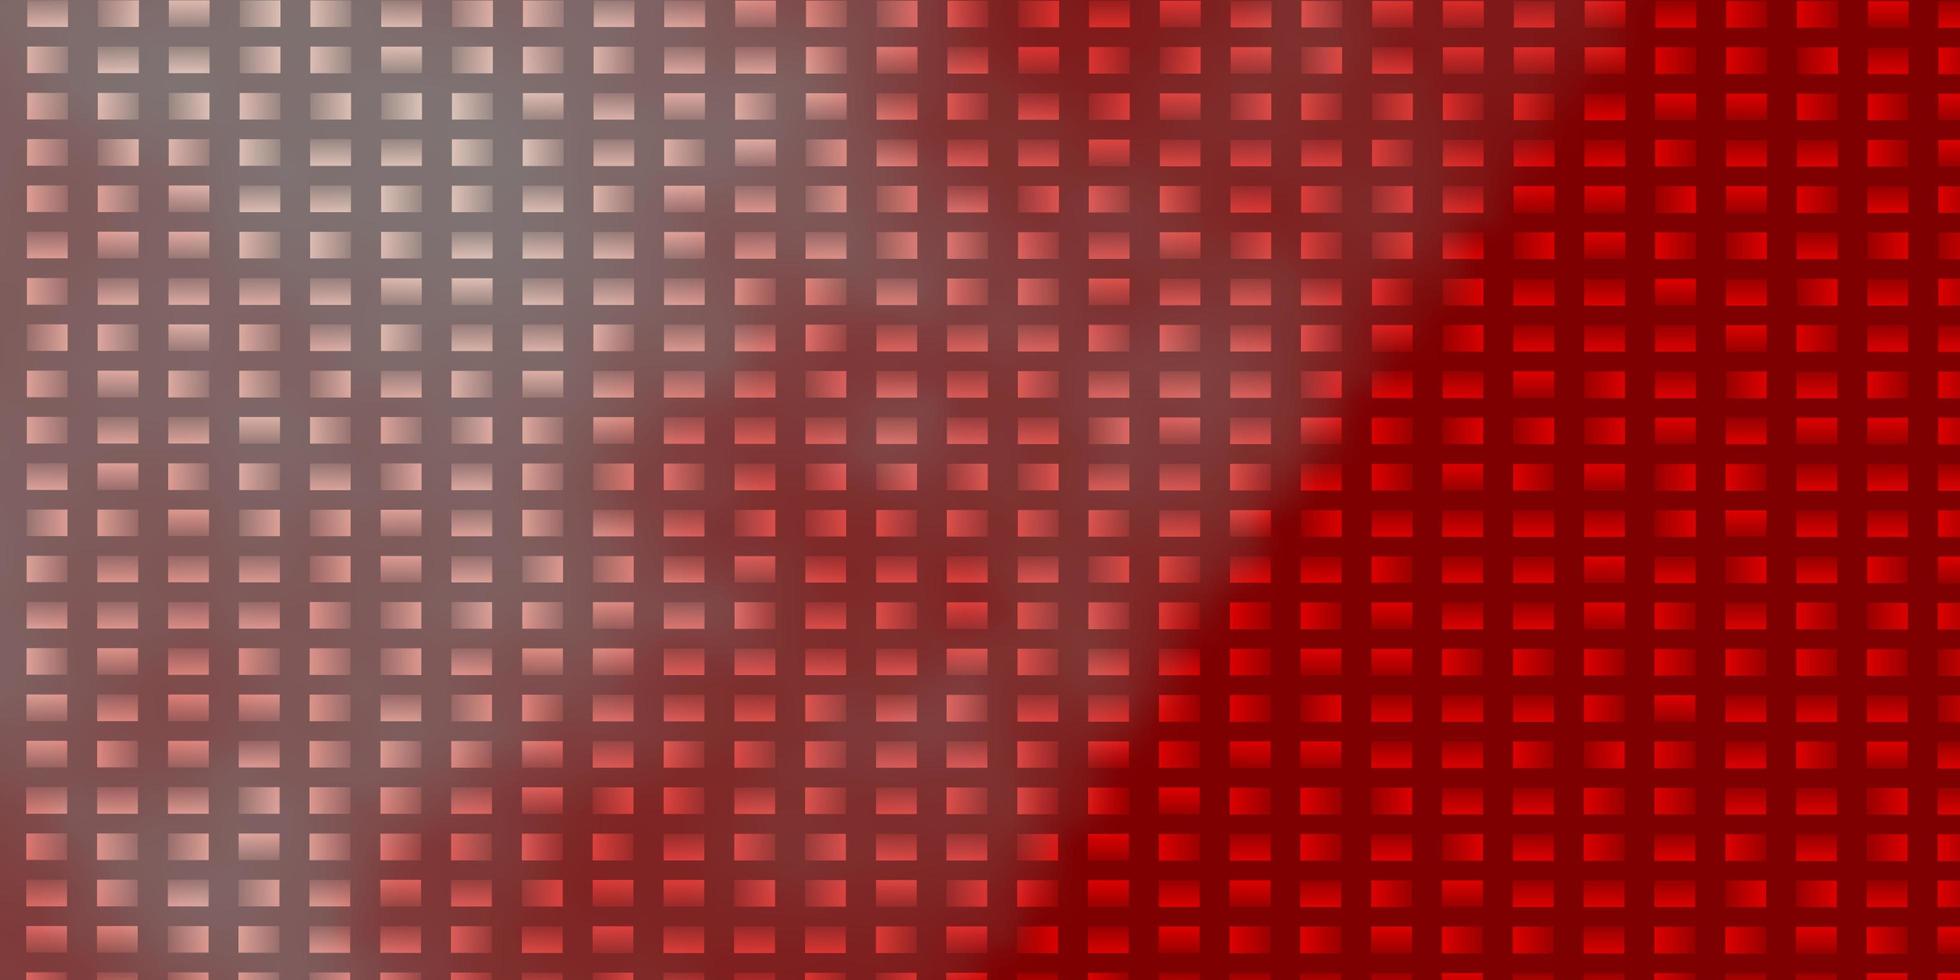 sfondo vettoriale rosso chiaro in stile poligonale.